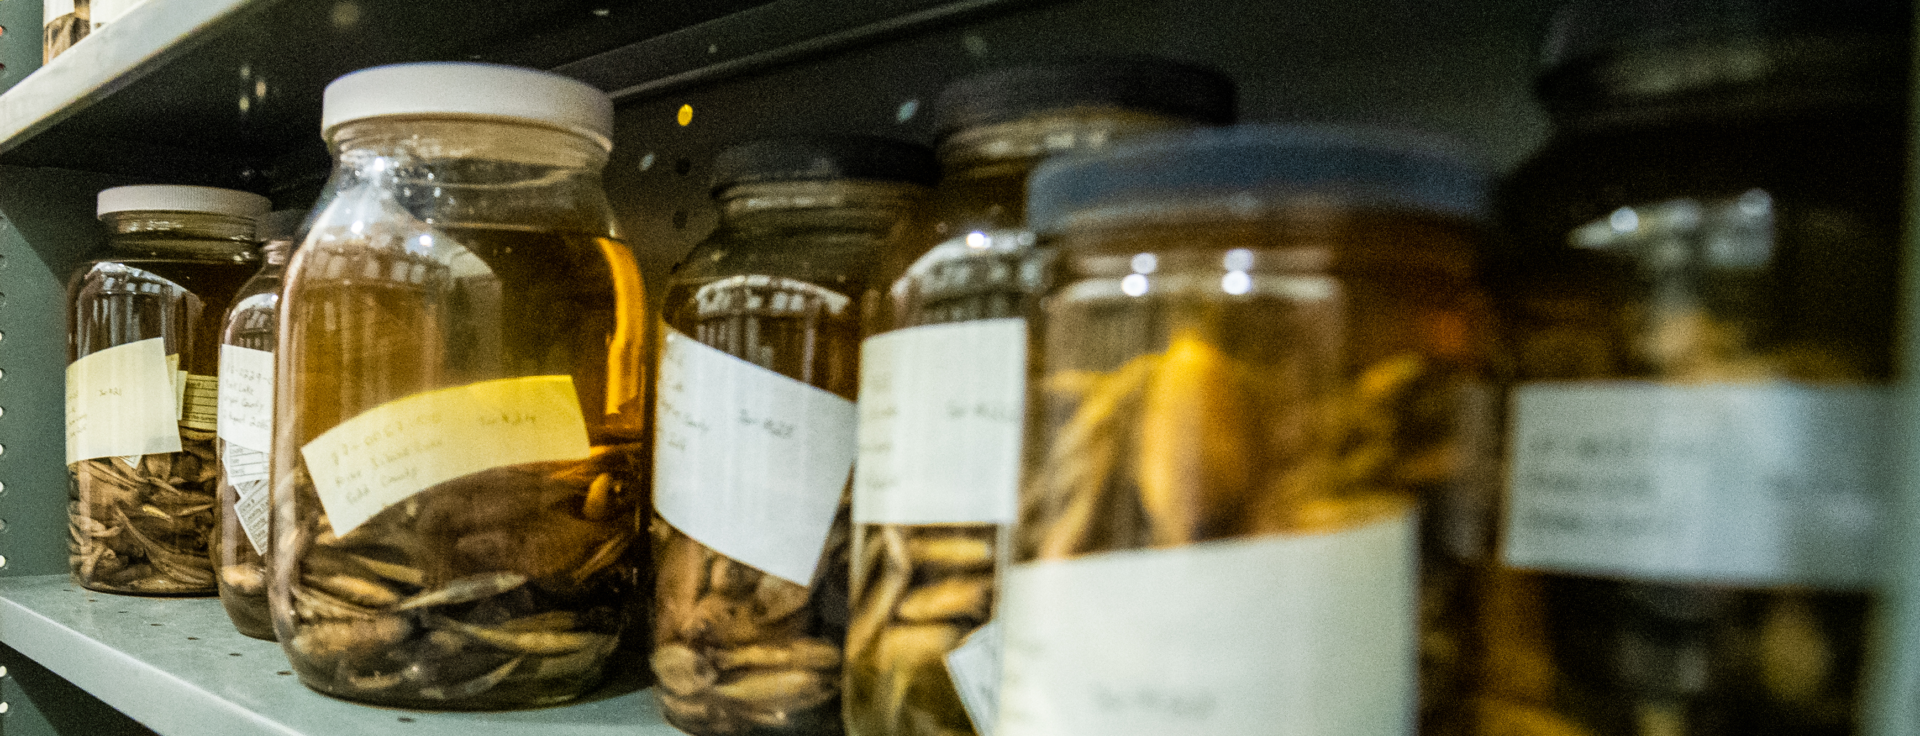 Jars of pickled fish specimens on a shelf